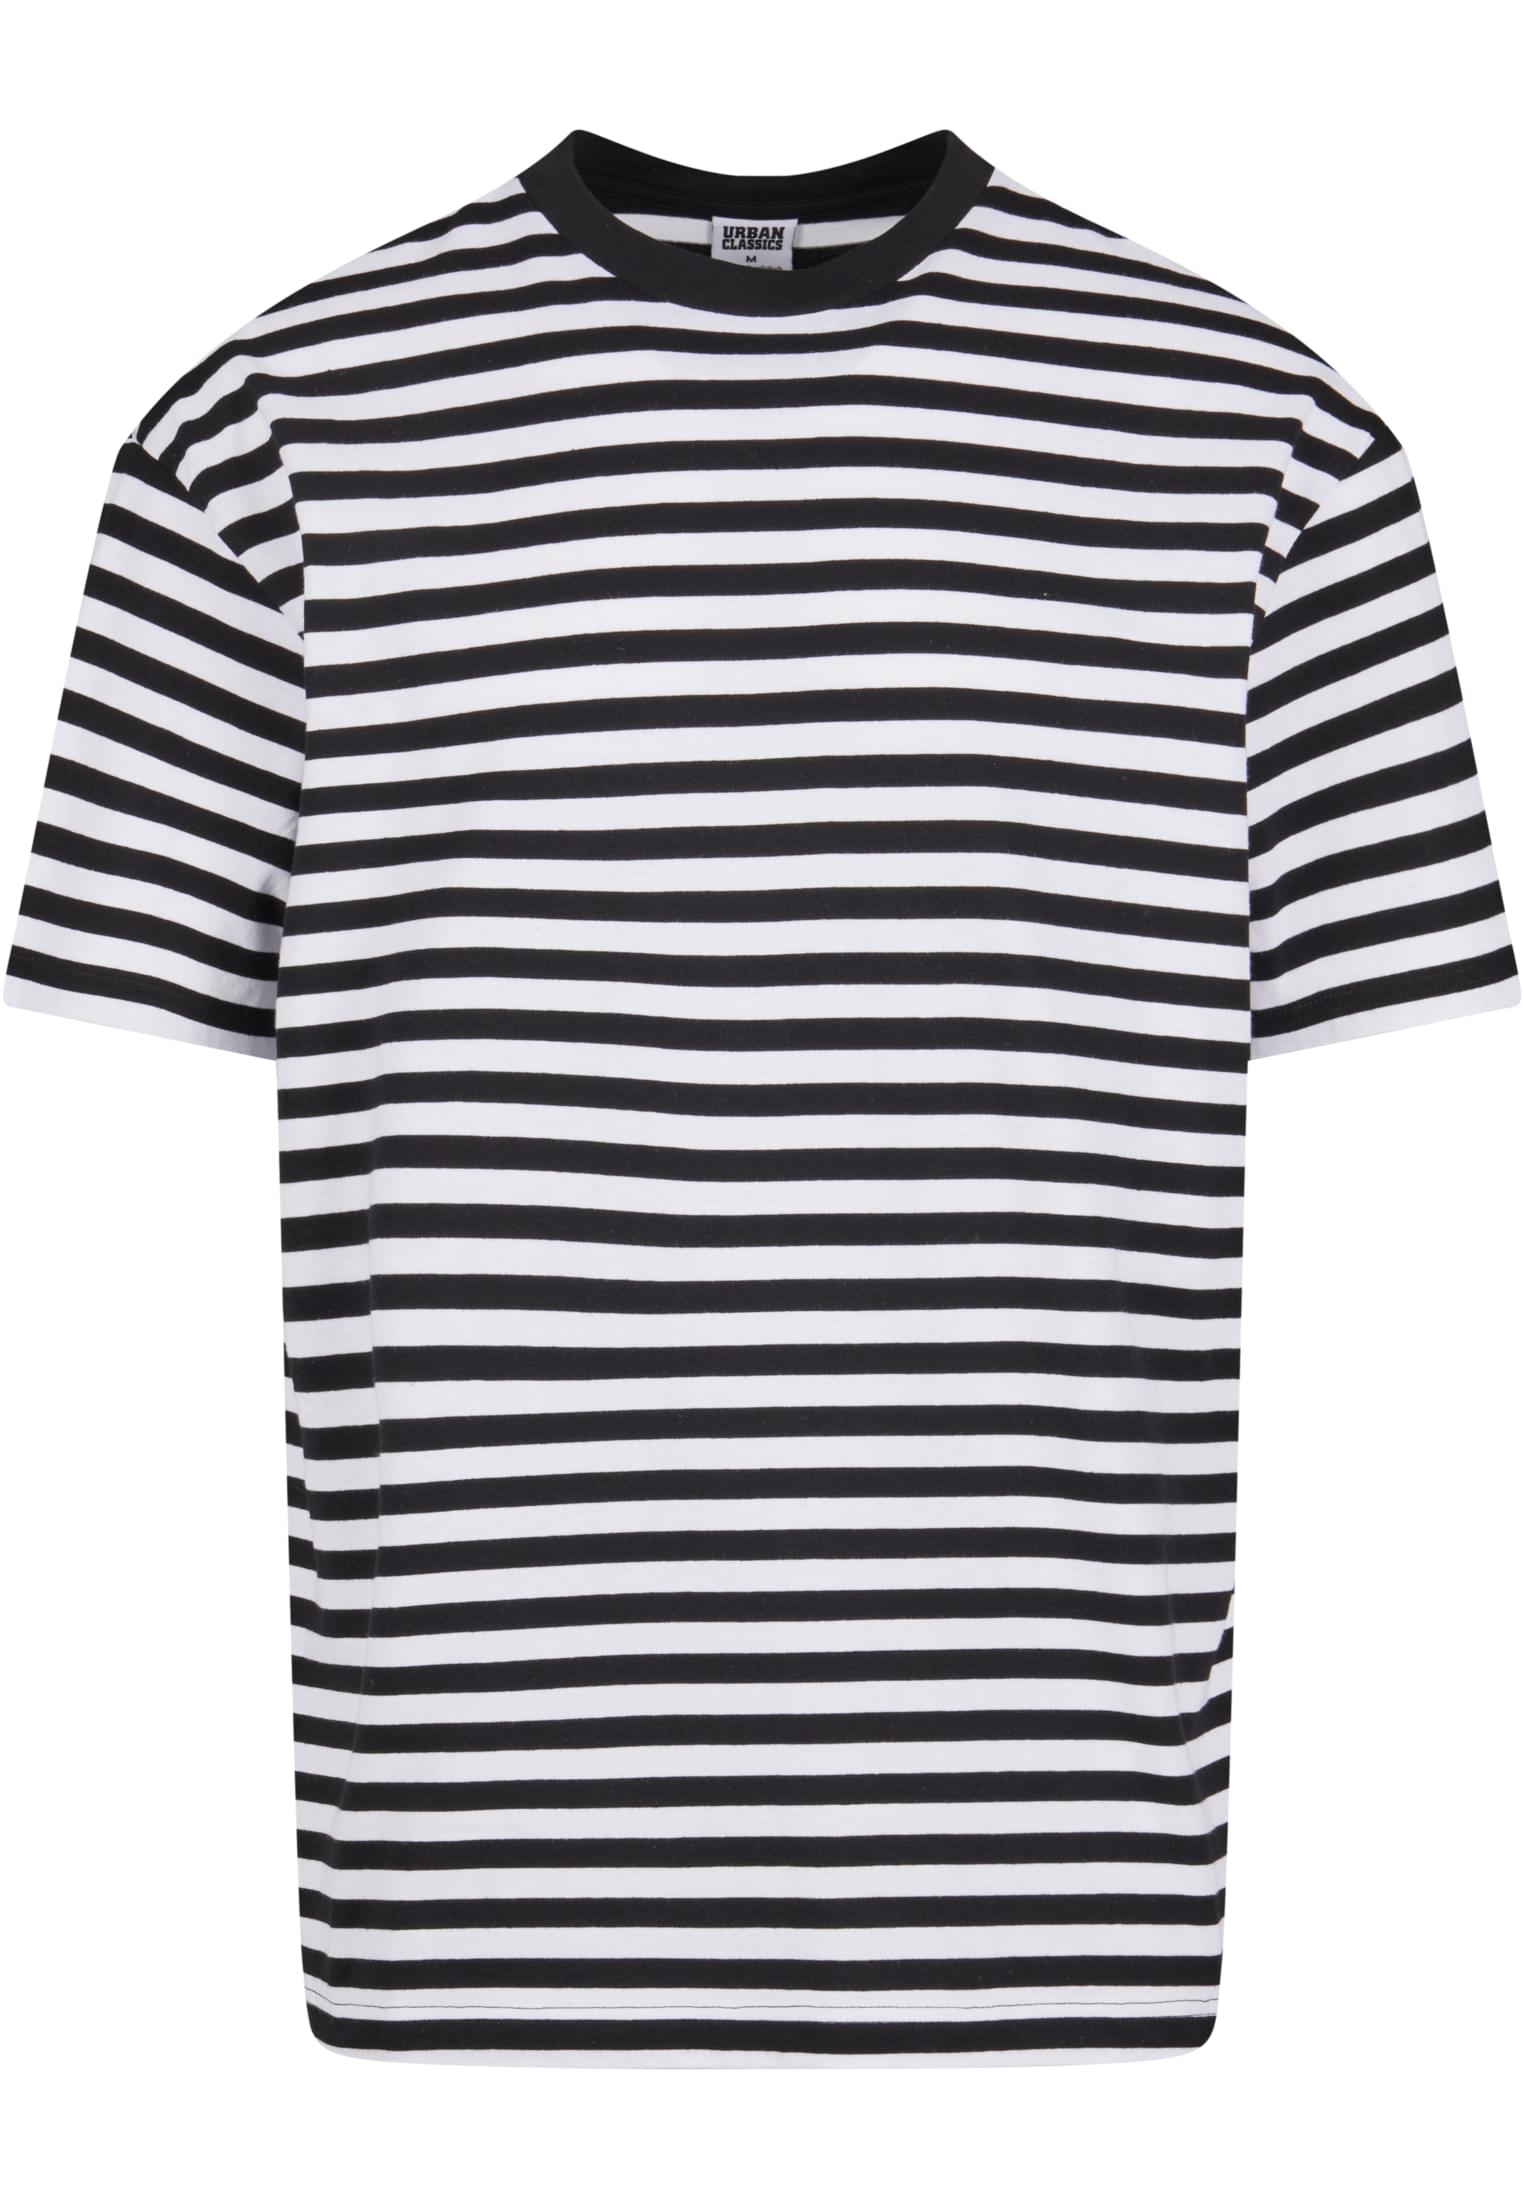 Men's T-shirt Regular Stripe white/black